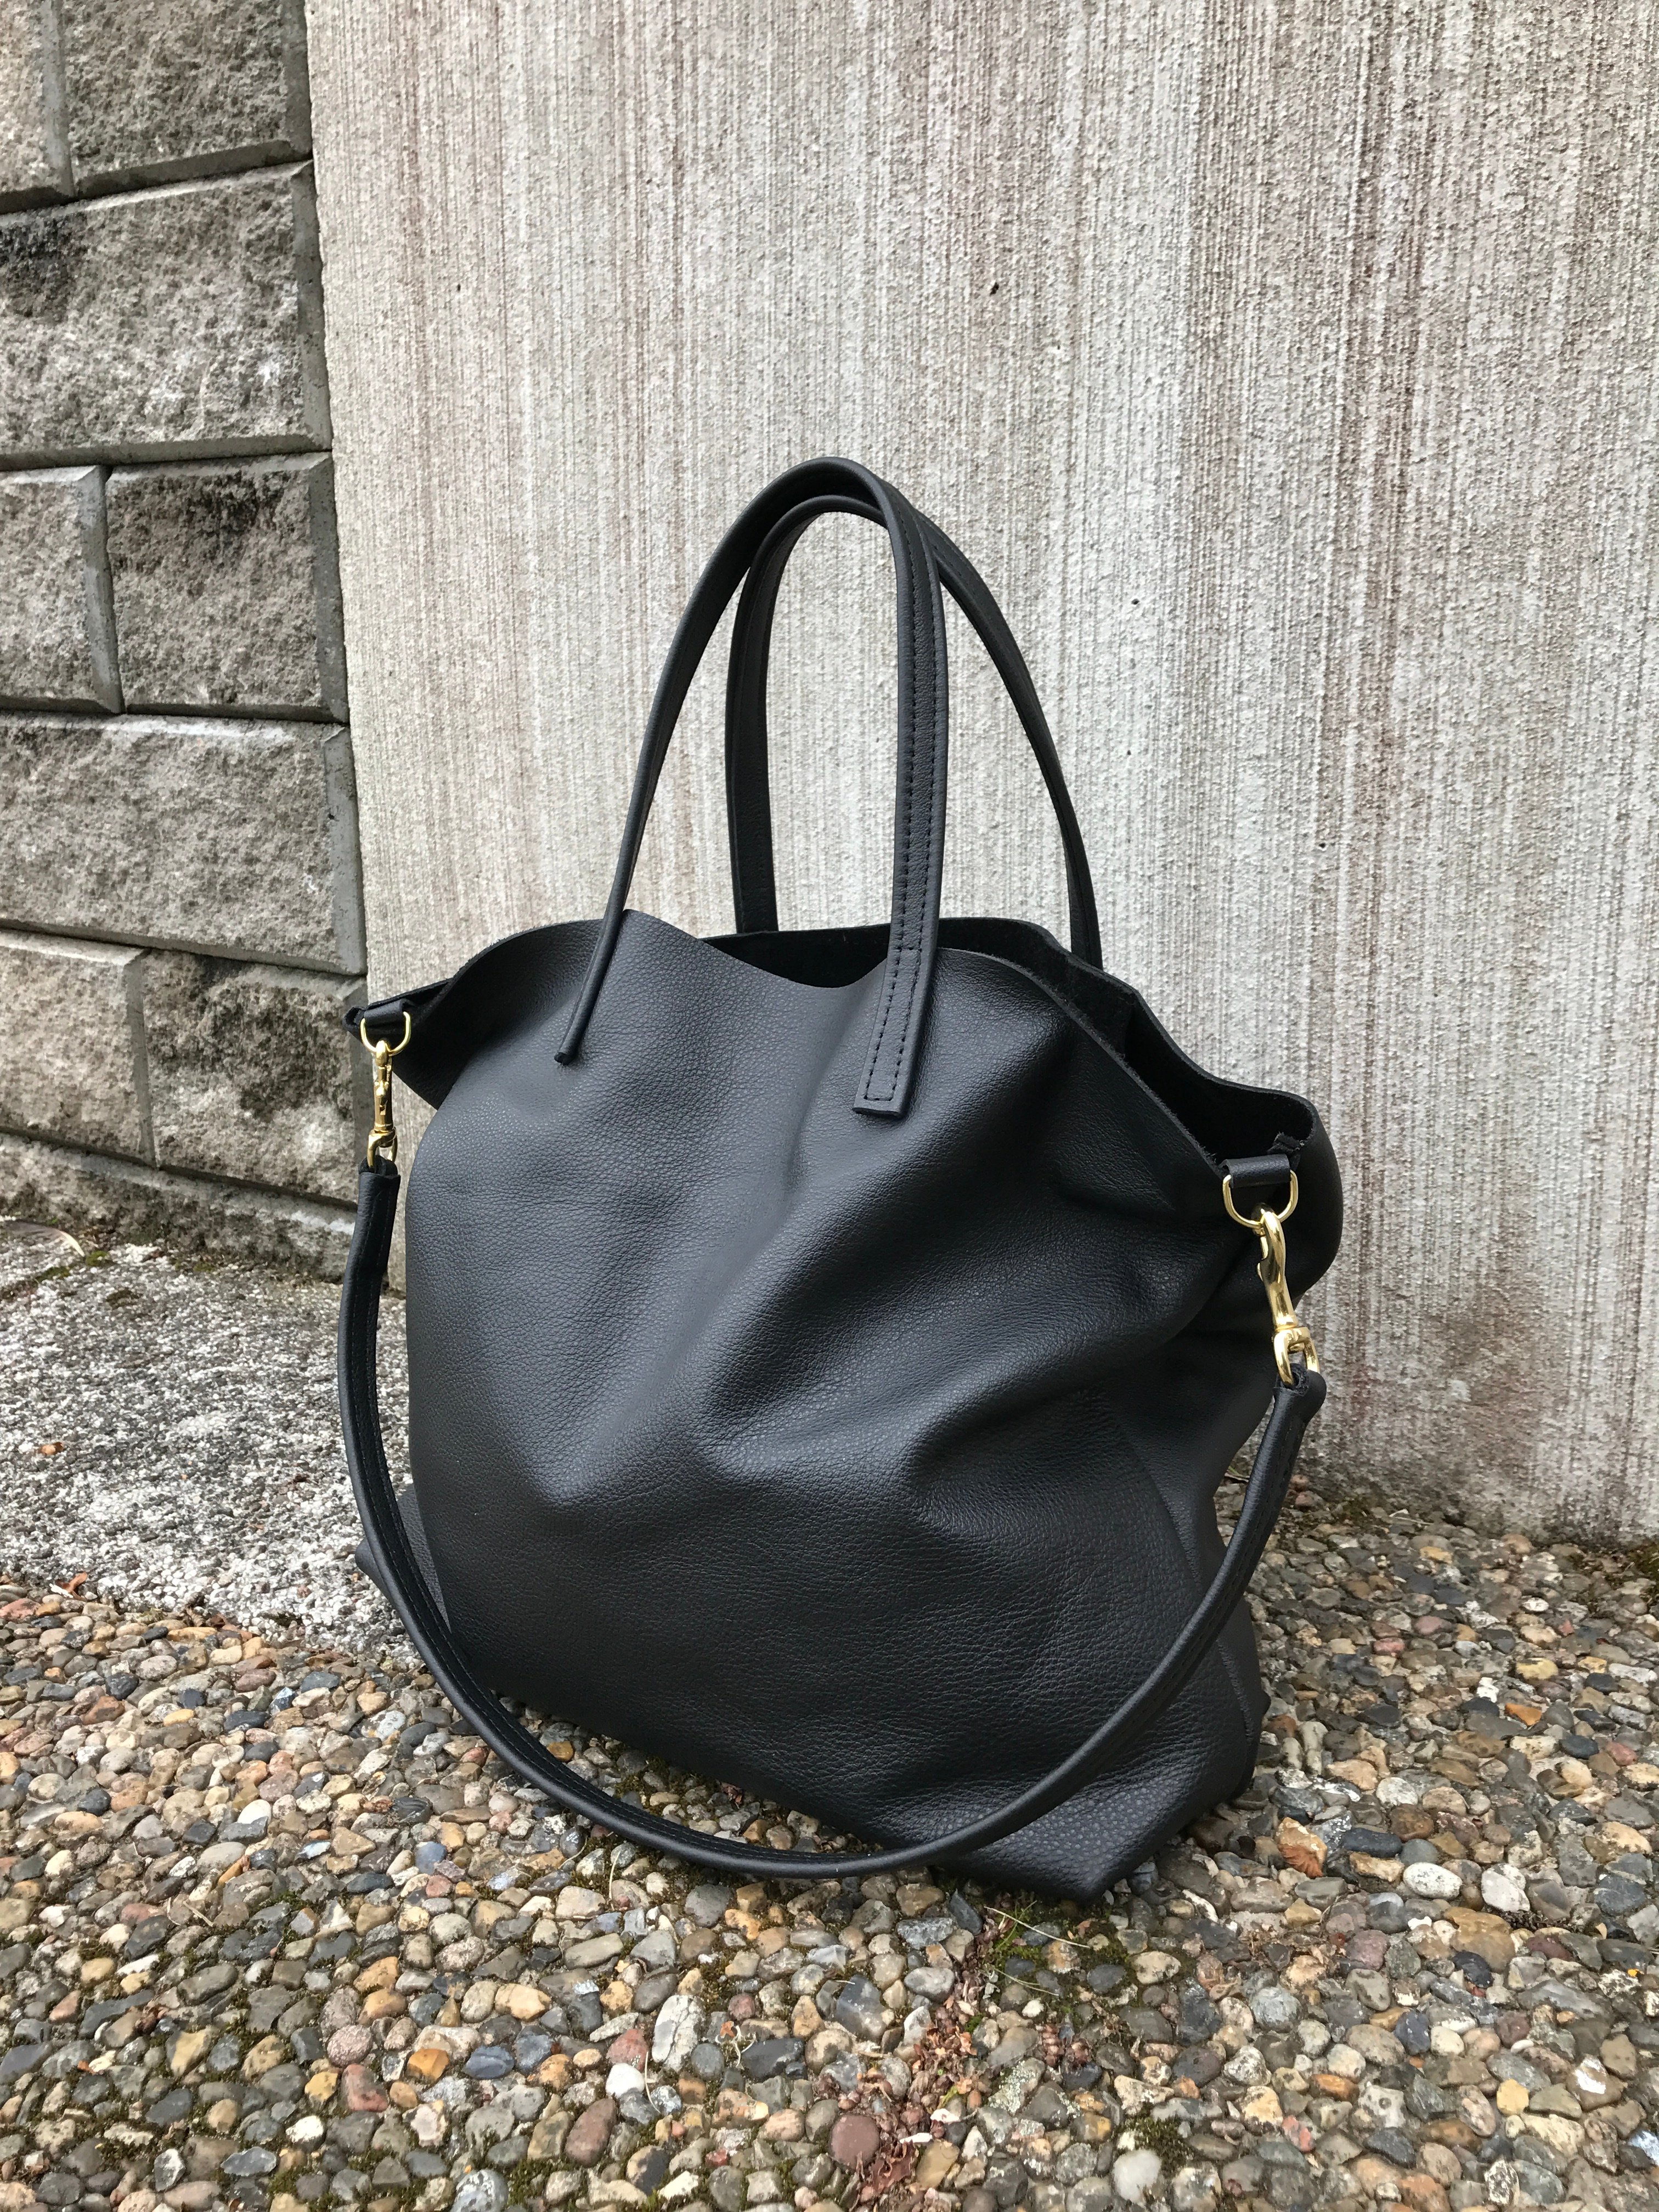 NEW Tote Bag - Black